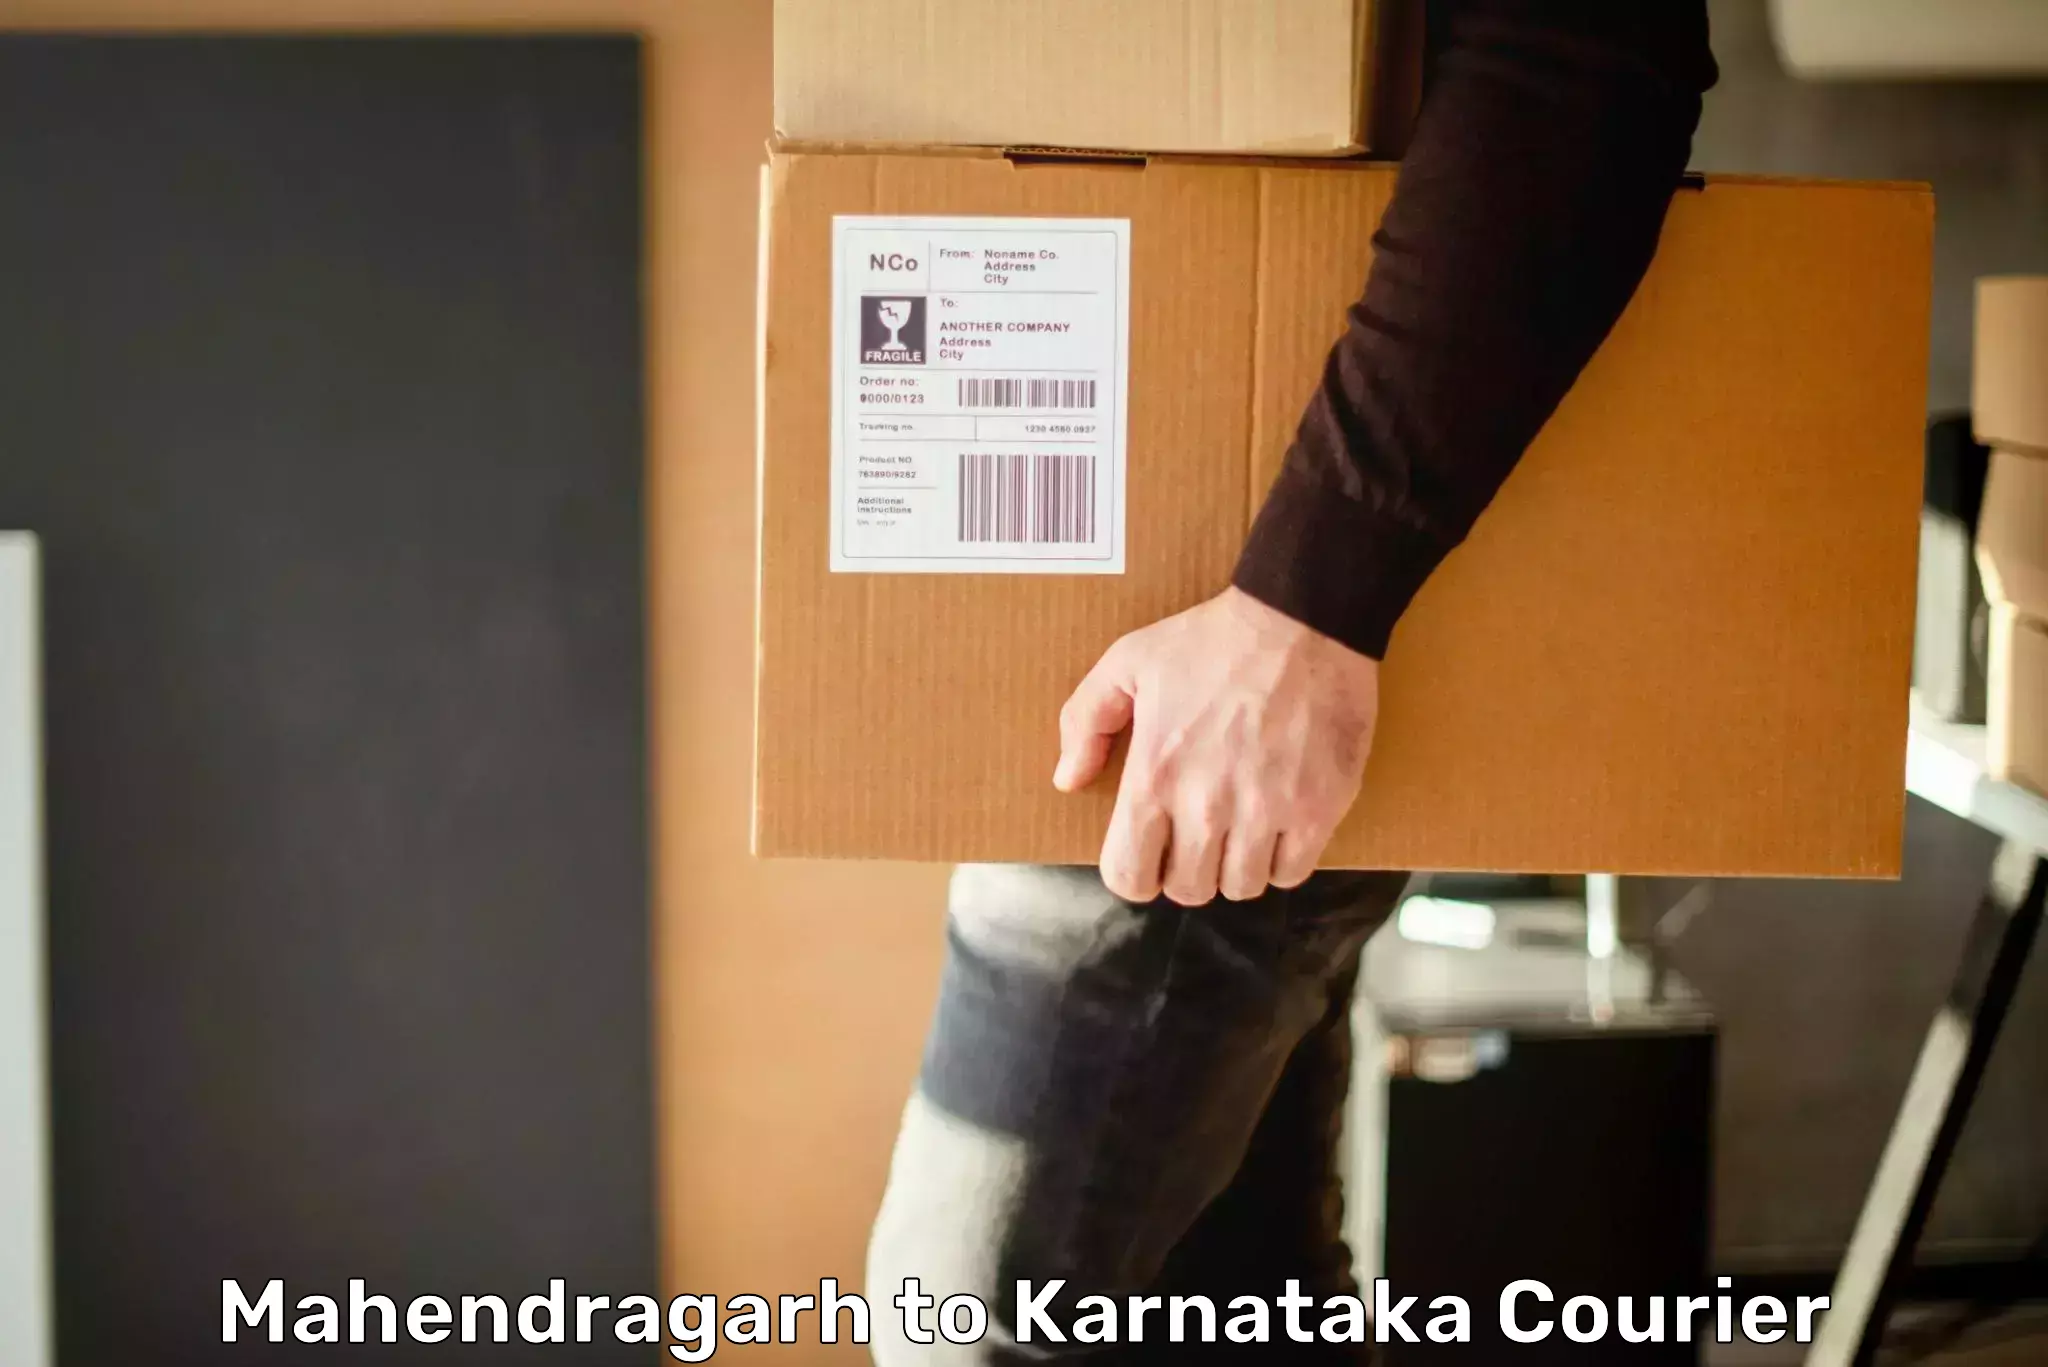 User-friendly delivery service Mahendragarh to Anavatti